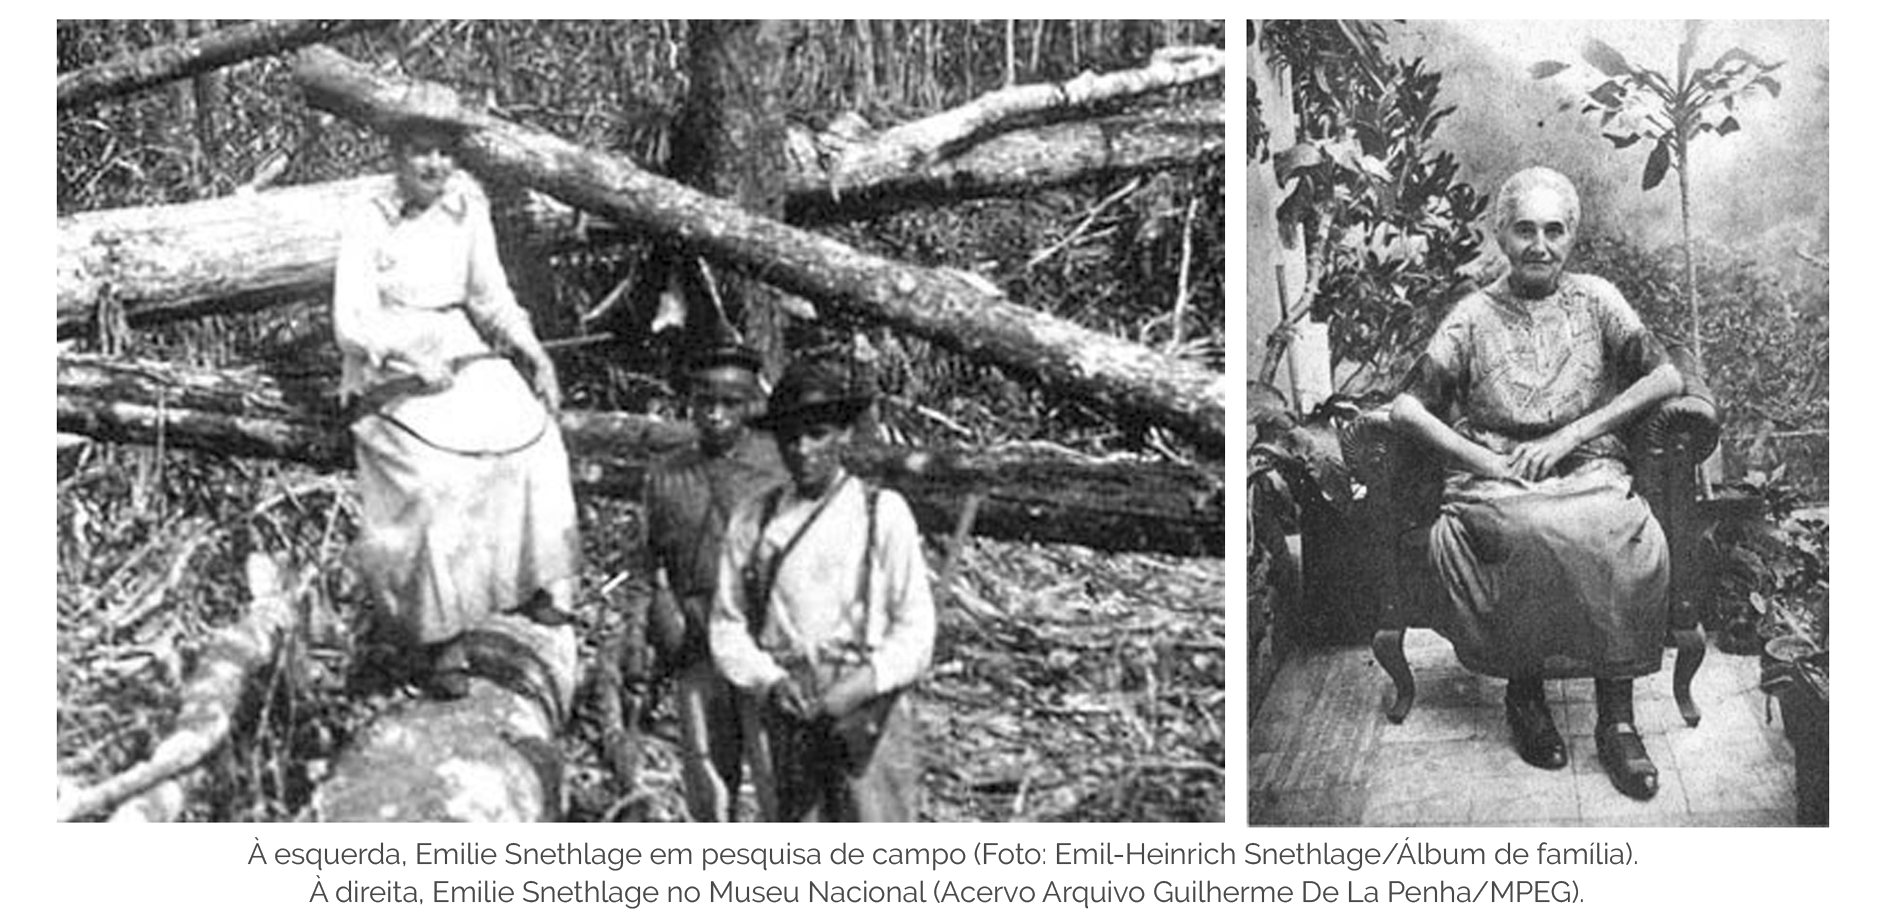 À esquerda, Emilie Snethlage em pesquisa de campo (Foto: Emil-Heinrich Snethlage/Álbum de família). À direita, Emilie Snethlage no Museu Nacional (Acervo Arquivo Guilherme De La Penha/MPEG).